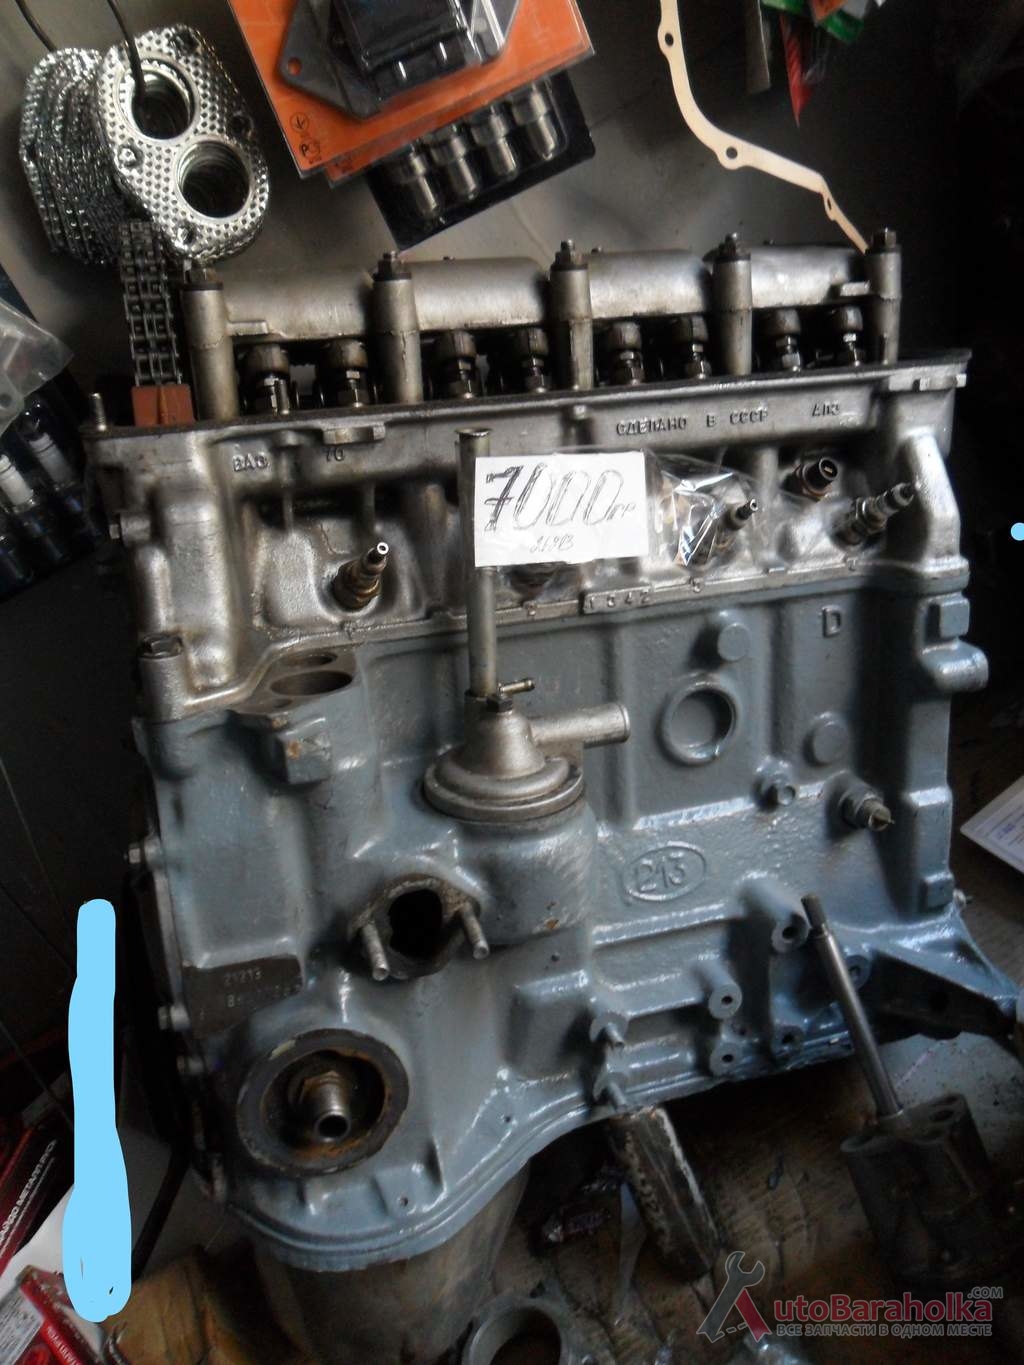 Продам Двигатель ВАЗ 21213 2121 нива 1.7 из-за границы. малый пробег. проверенный. высокая компрессия Полтава